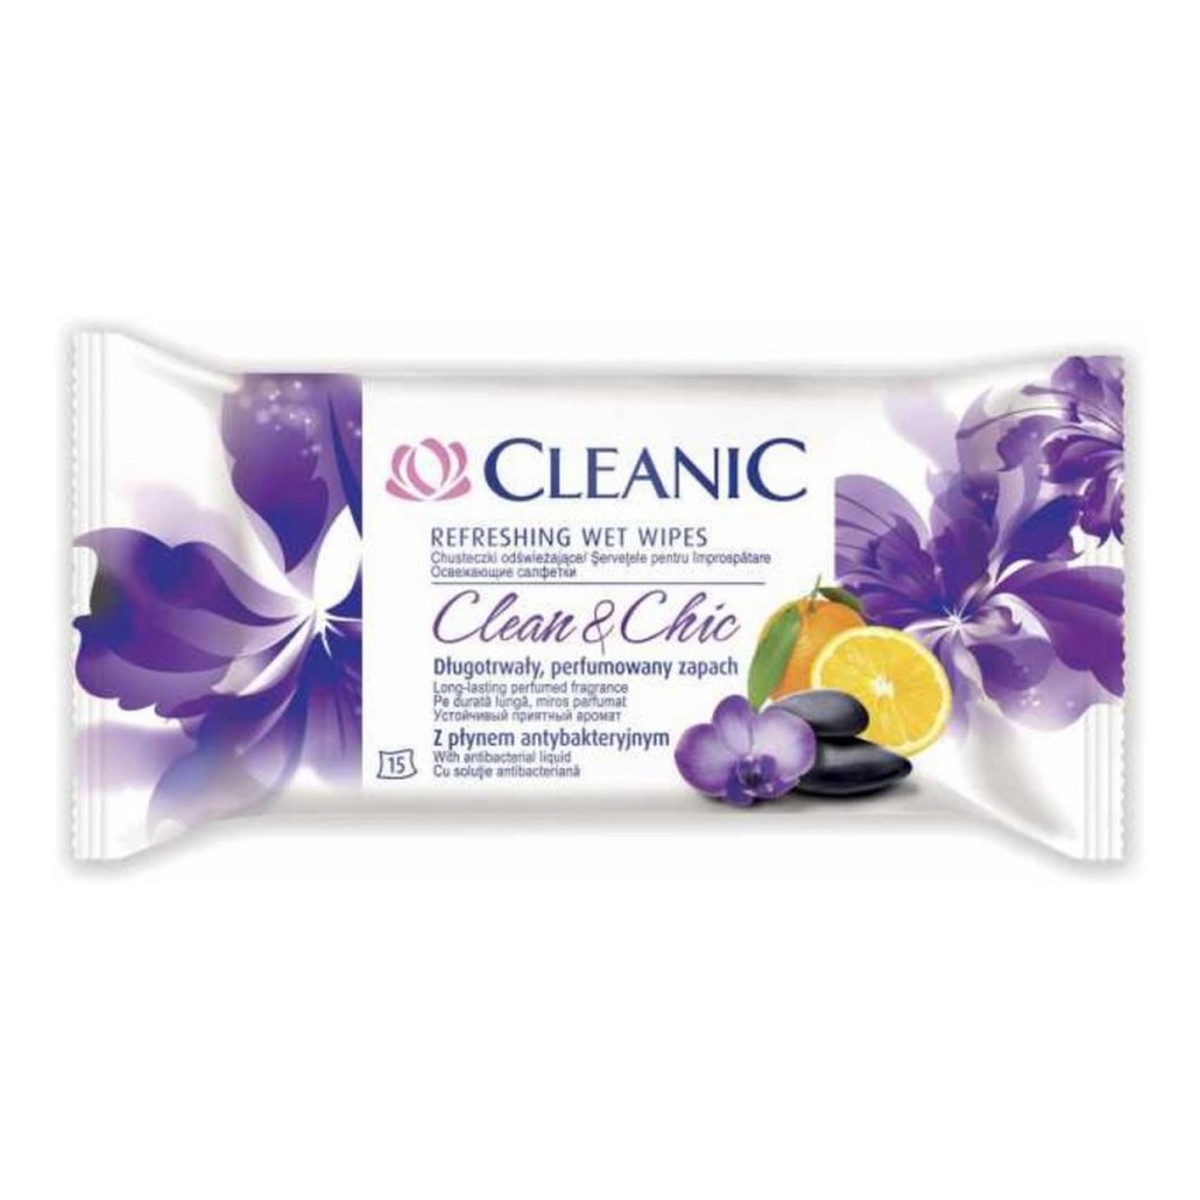 Cleanic Refreshing Wet Wipes Chusteczki Odświeżające Clean & Chic 15 szt. z Płynem Antybakteryjnym